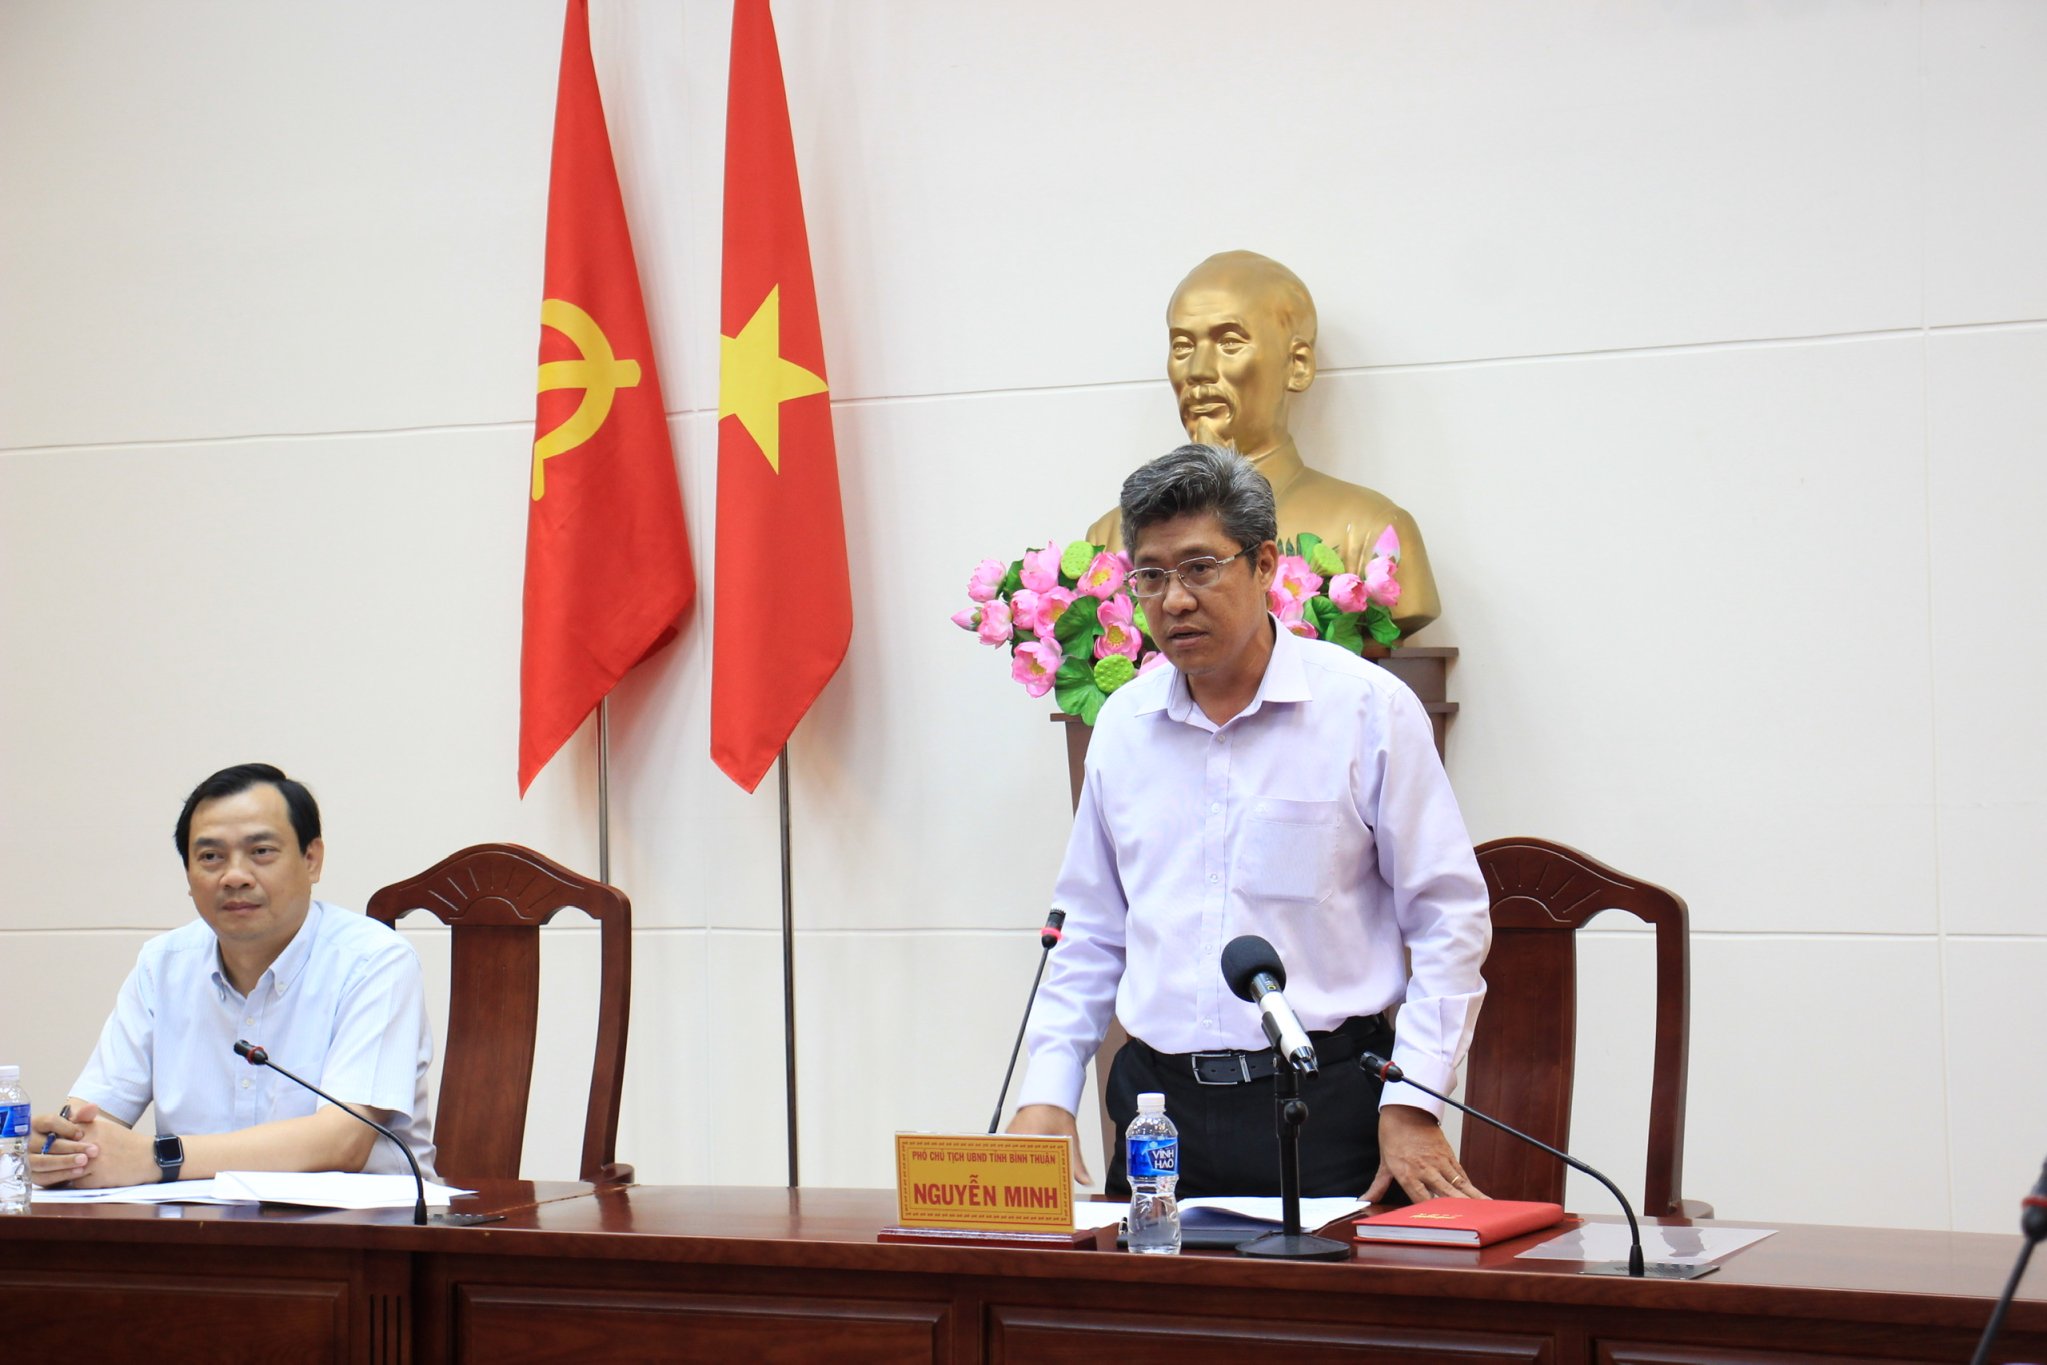 Phó Chủ tịch UBND tỉnh Bình Thuận Nguyễn Minh cho biết: Bình Thuận sẵn sàng đăng cai Năm Du lịch quốc gia 2023